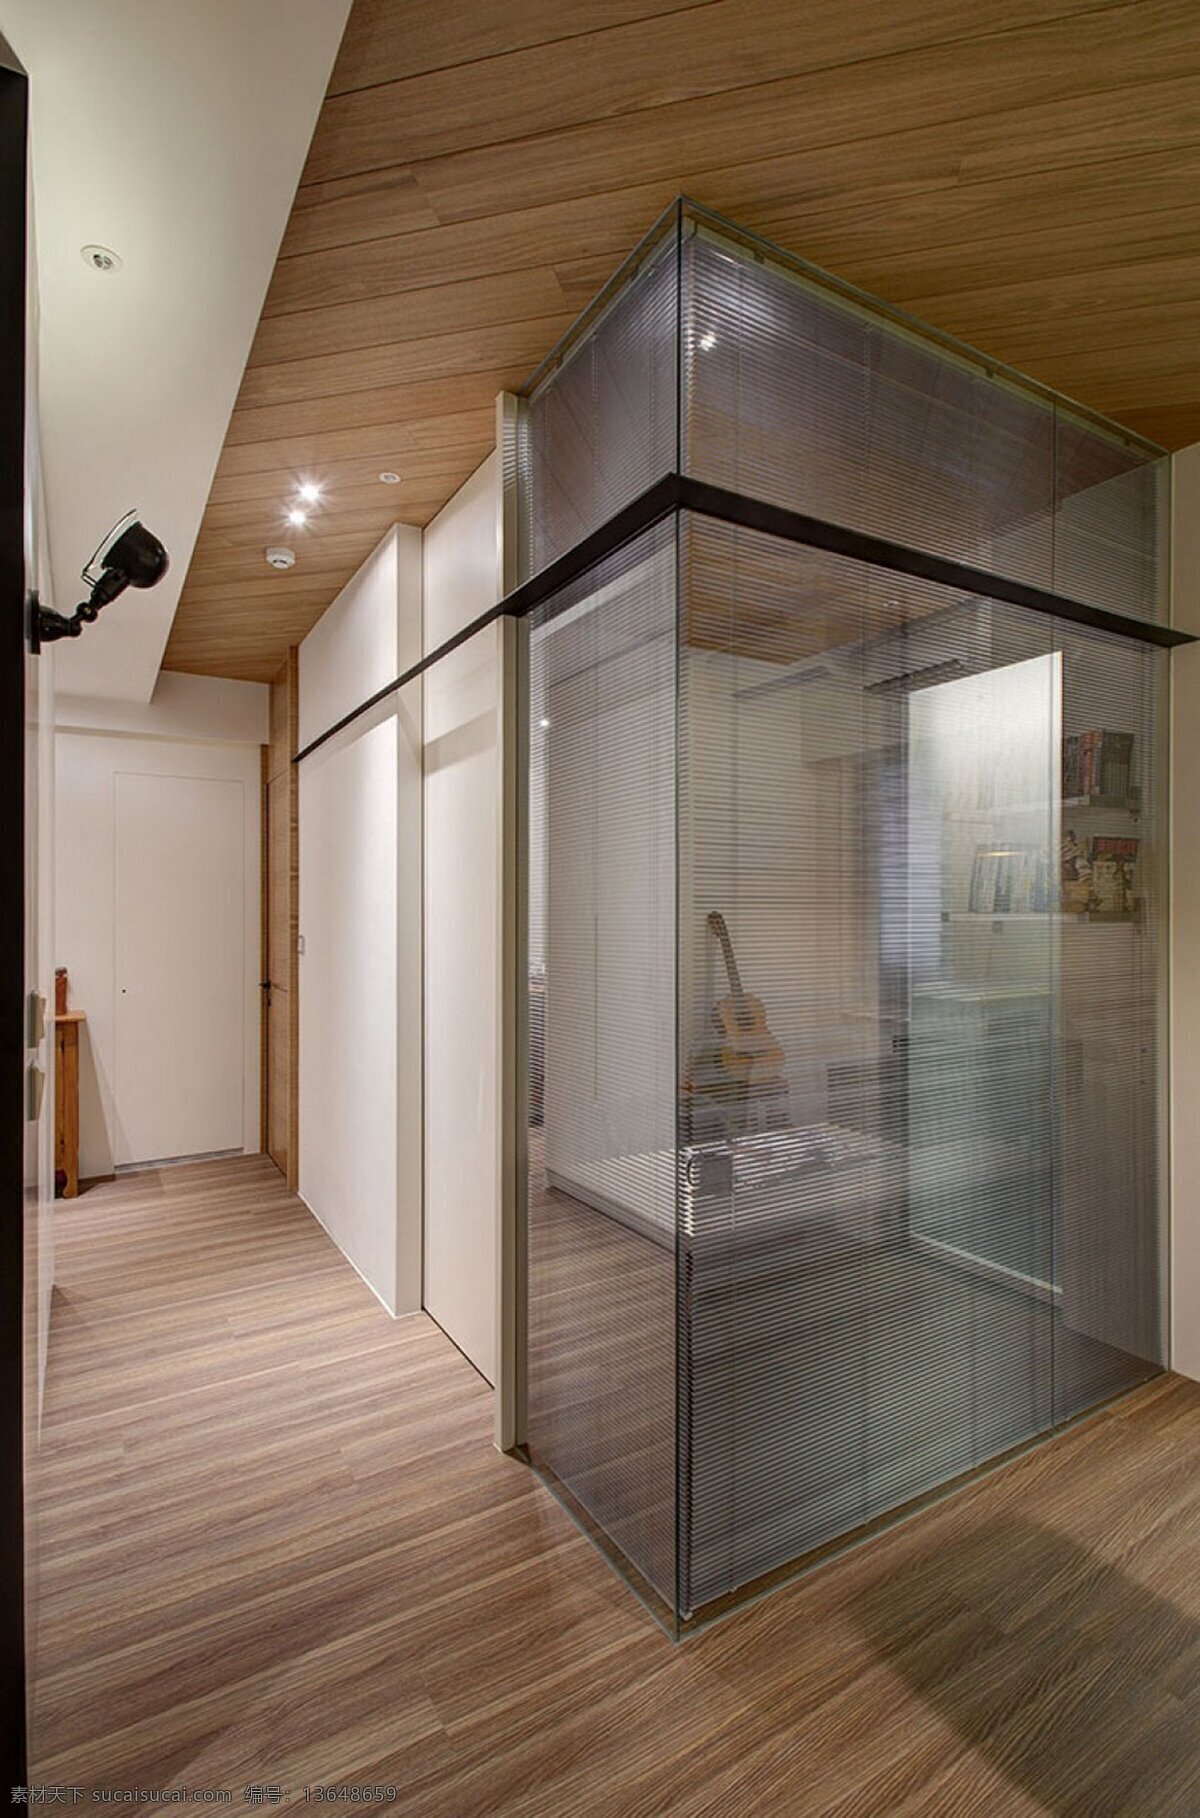 简约 室内 玻璃球 效果图 家居 家居生活 室内设计 装修 家具 装修设计 环境设计 生活百科